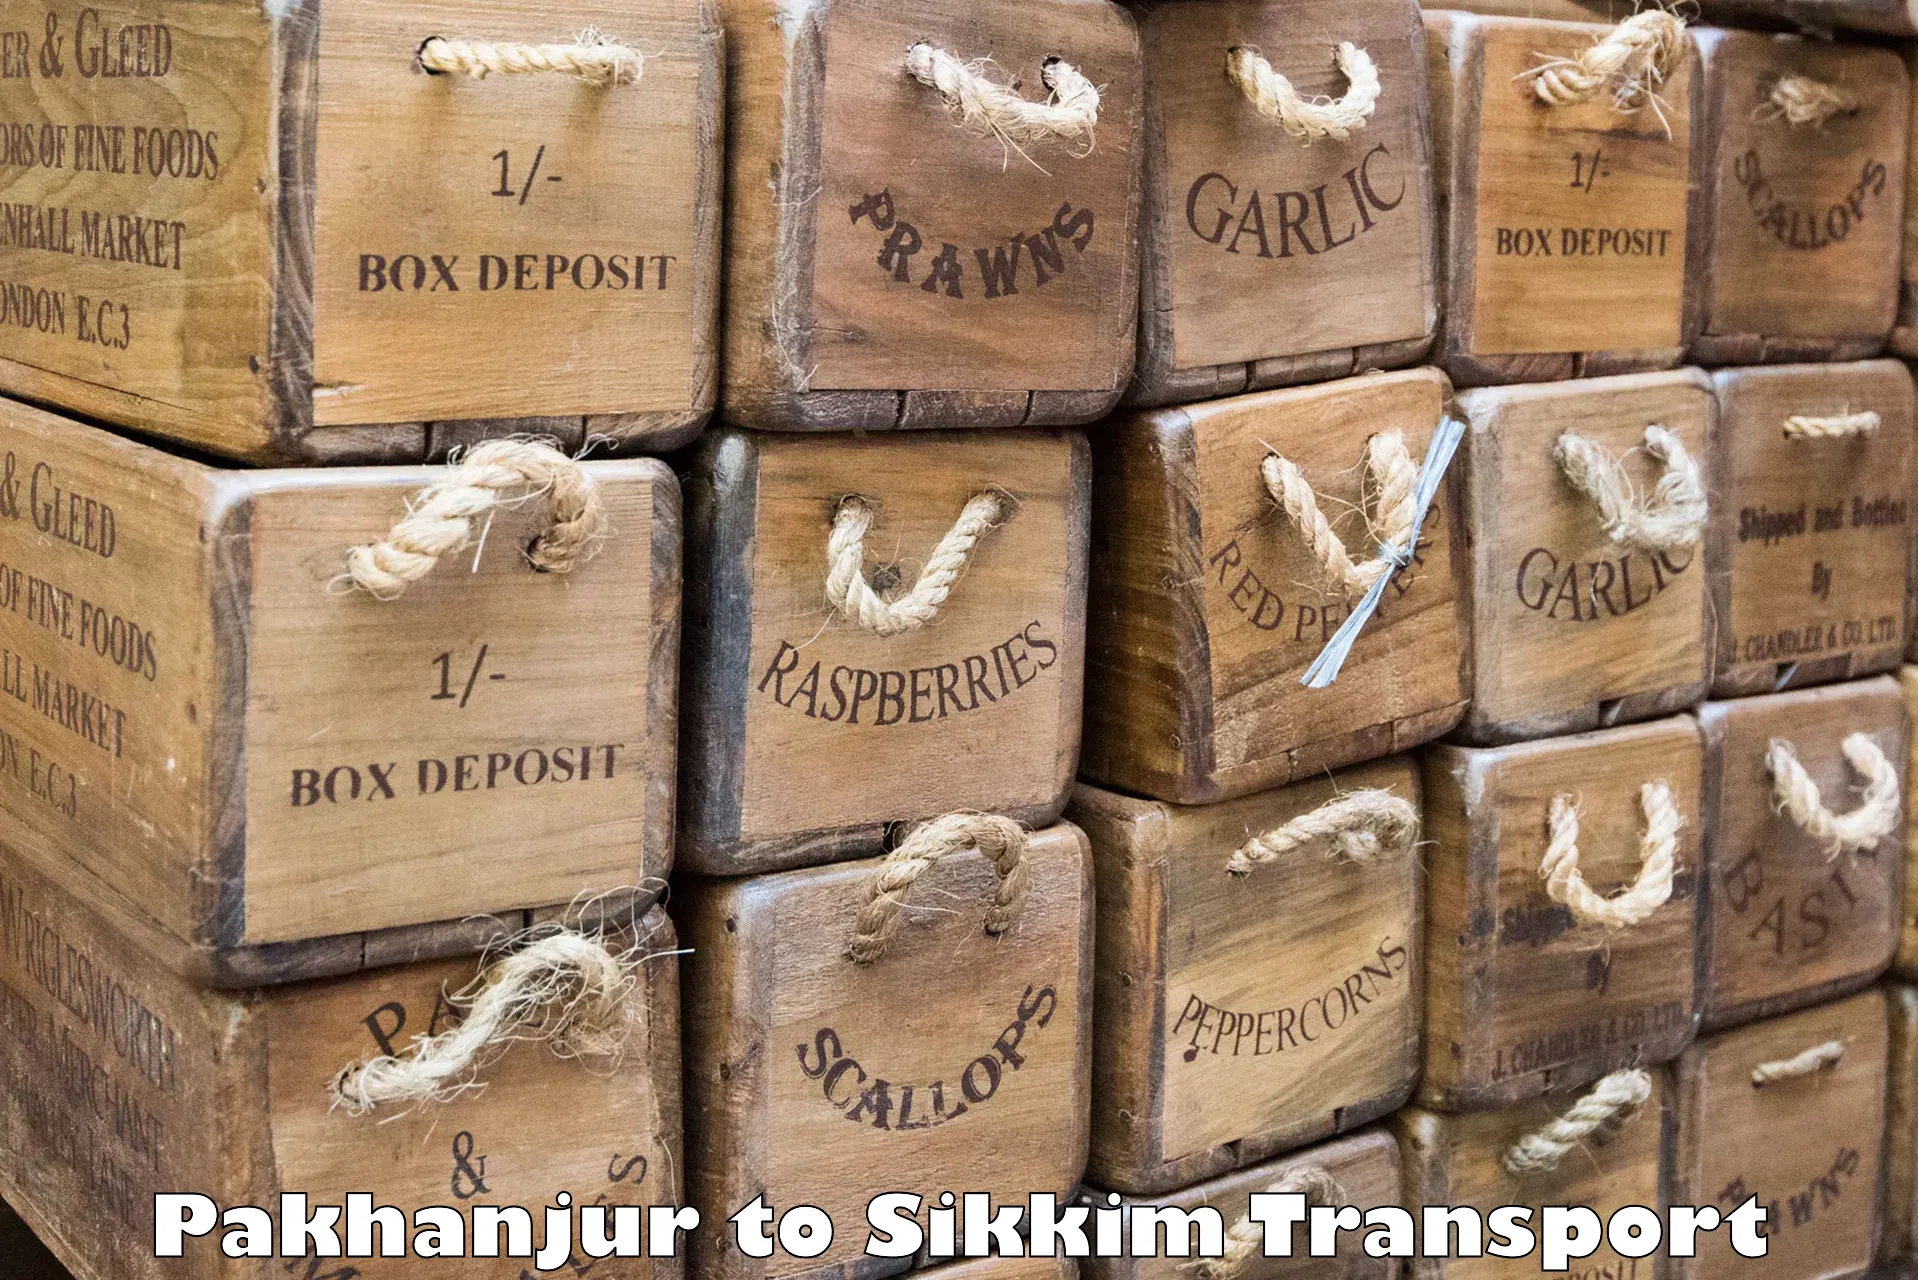 Express transport services Pakhanjur to NIT Sikkim